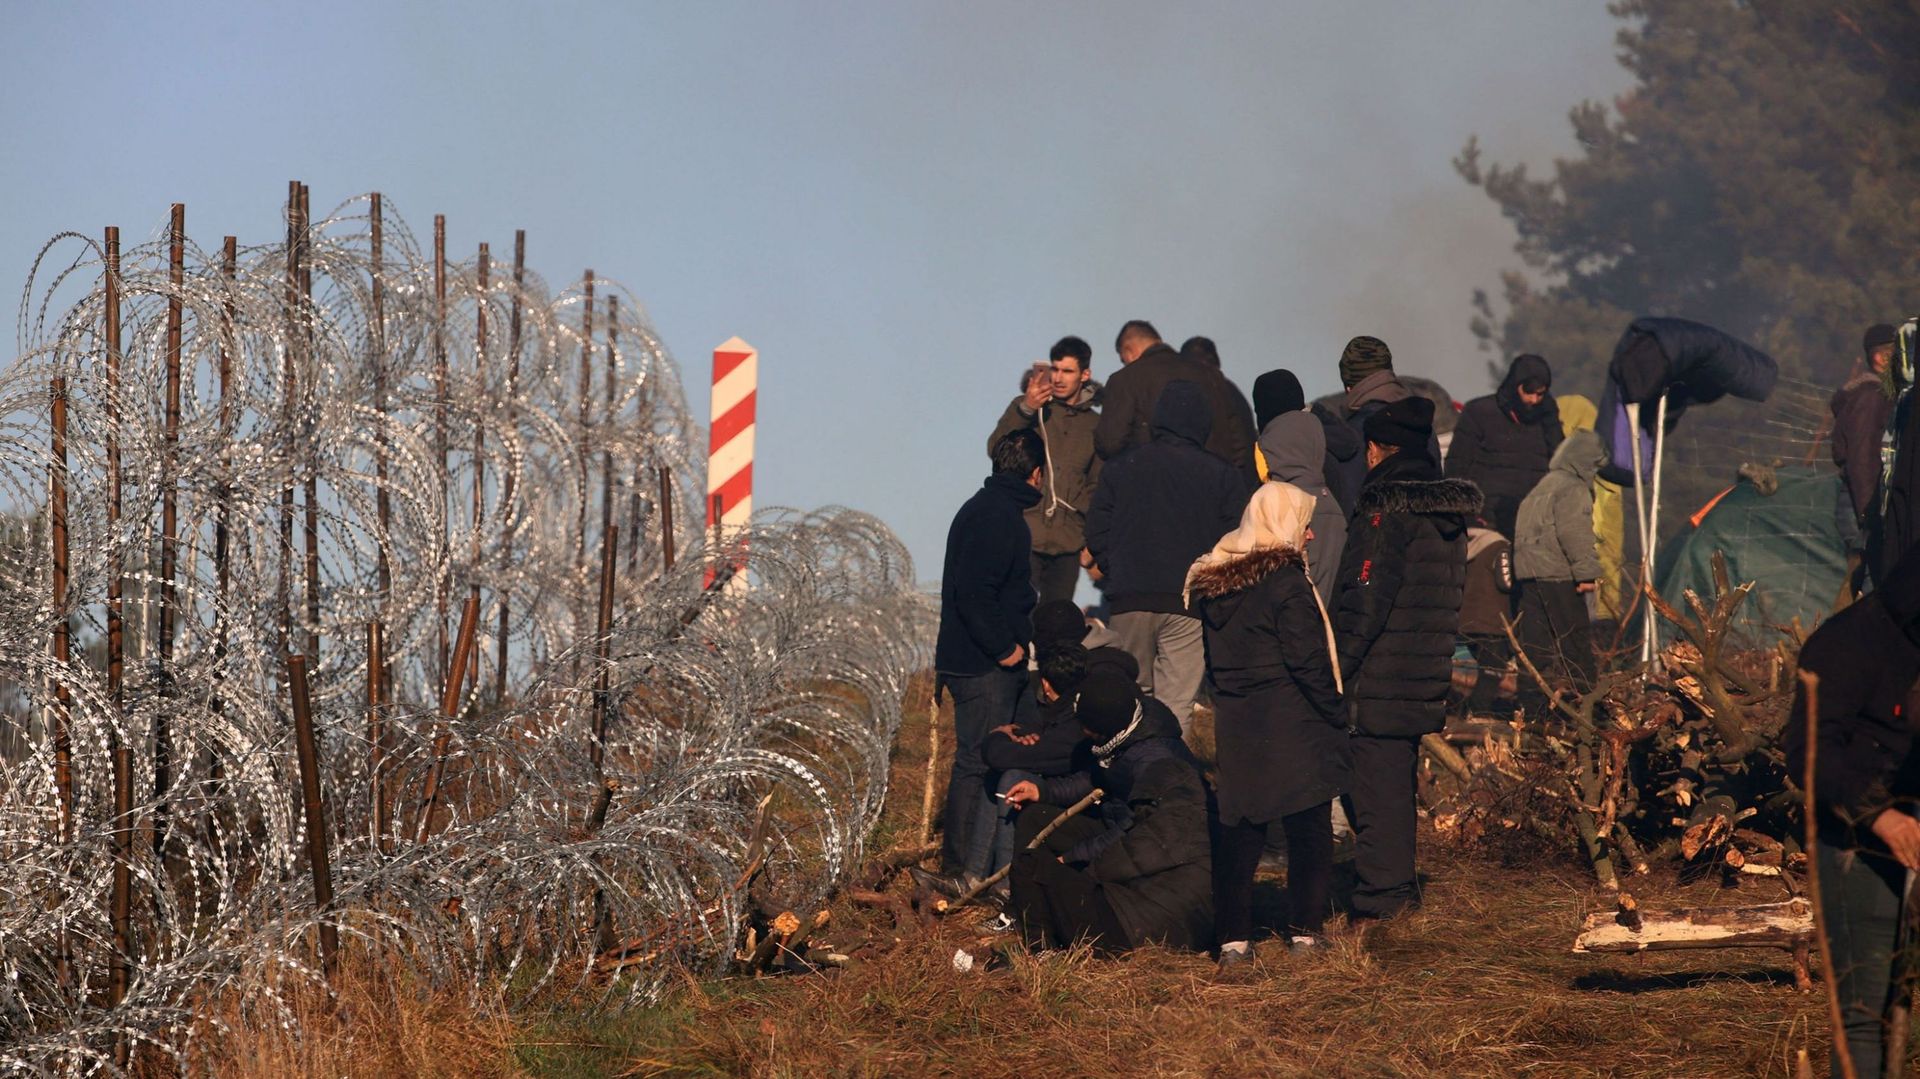 Des migrants coincés, dans le froid, à la frontière entre la Pologne et la Biélorussie le 9 novembre 2021